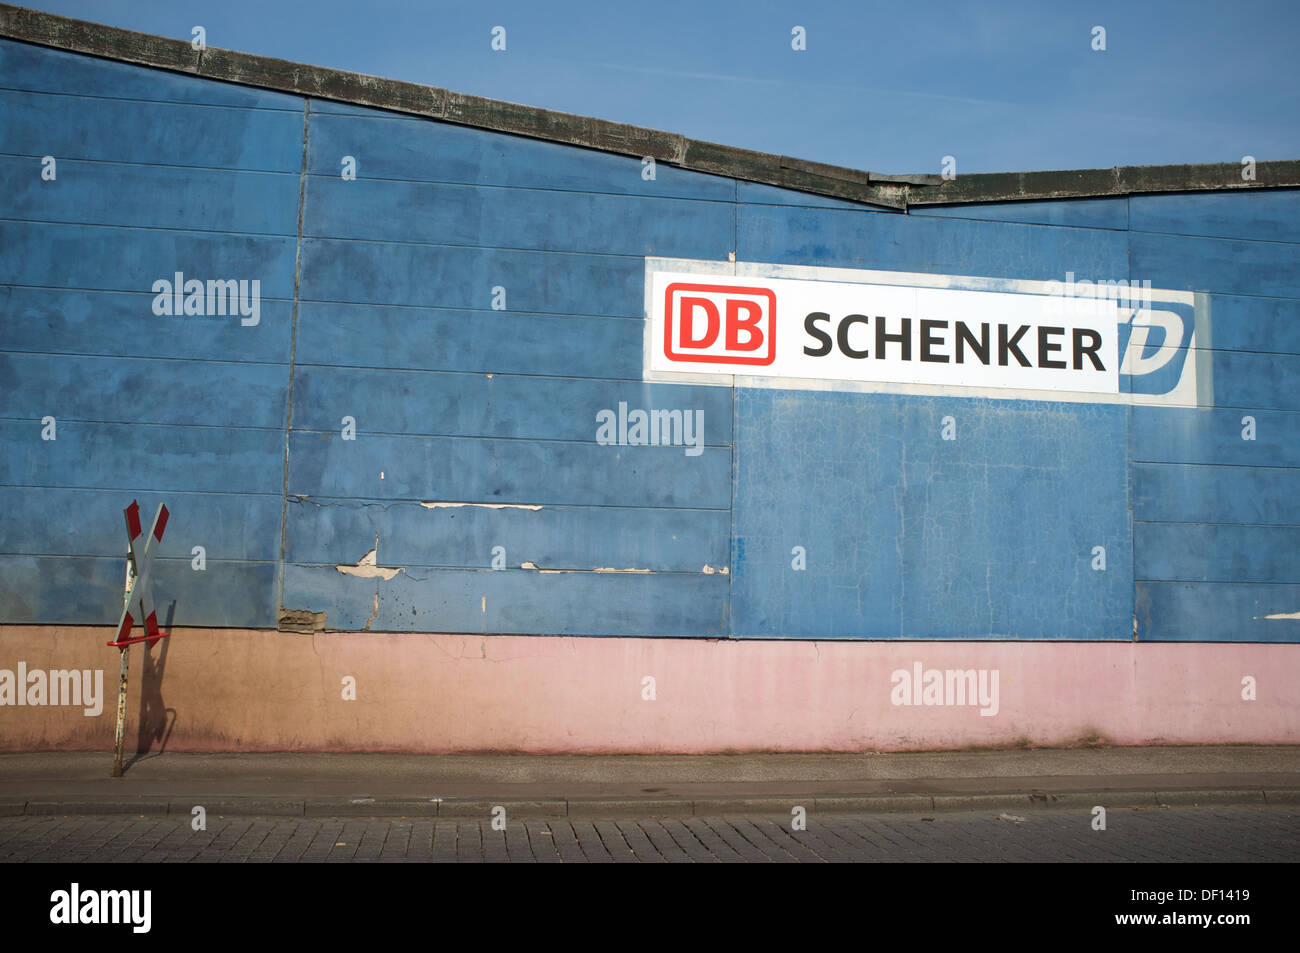 DB Schenker warehouse, Cologne, Allemagne. Banque D'Images